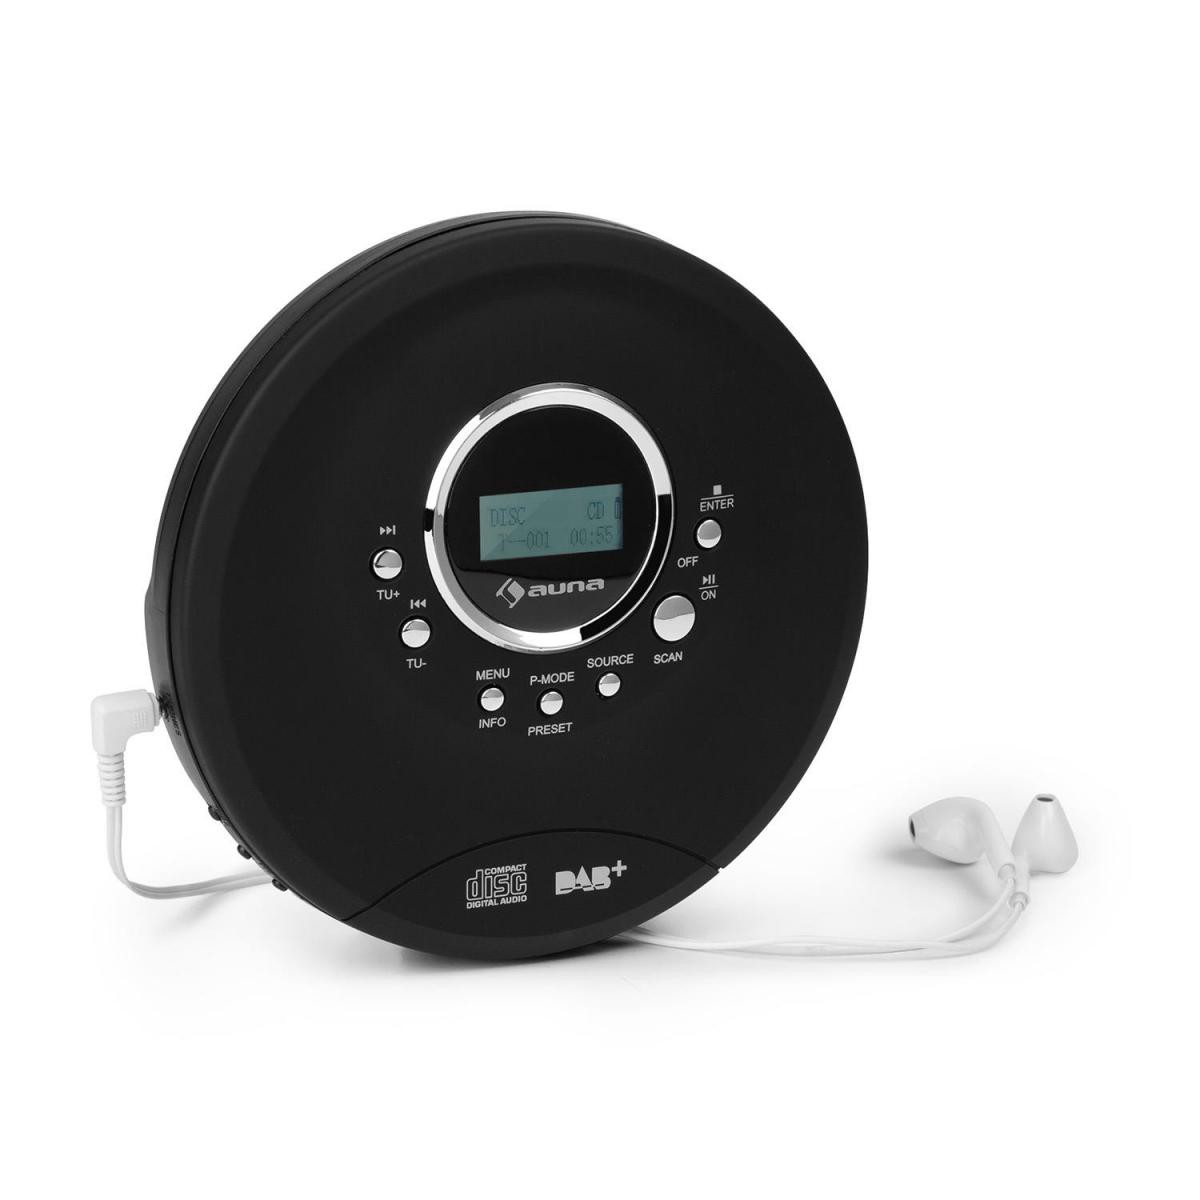 Auna - auna CDC 200 - DAB+ Discman avec tuner radio DAB + / FM , compatible MP3 , écouteurs intra-auriculaires - Noir - Radio, lecteur CD/MP3 enfant